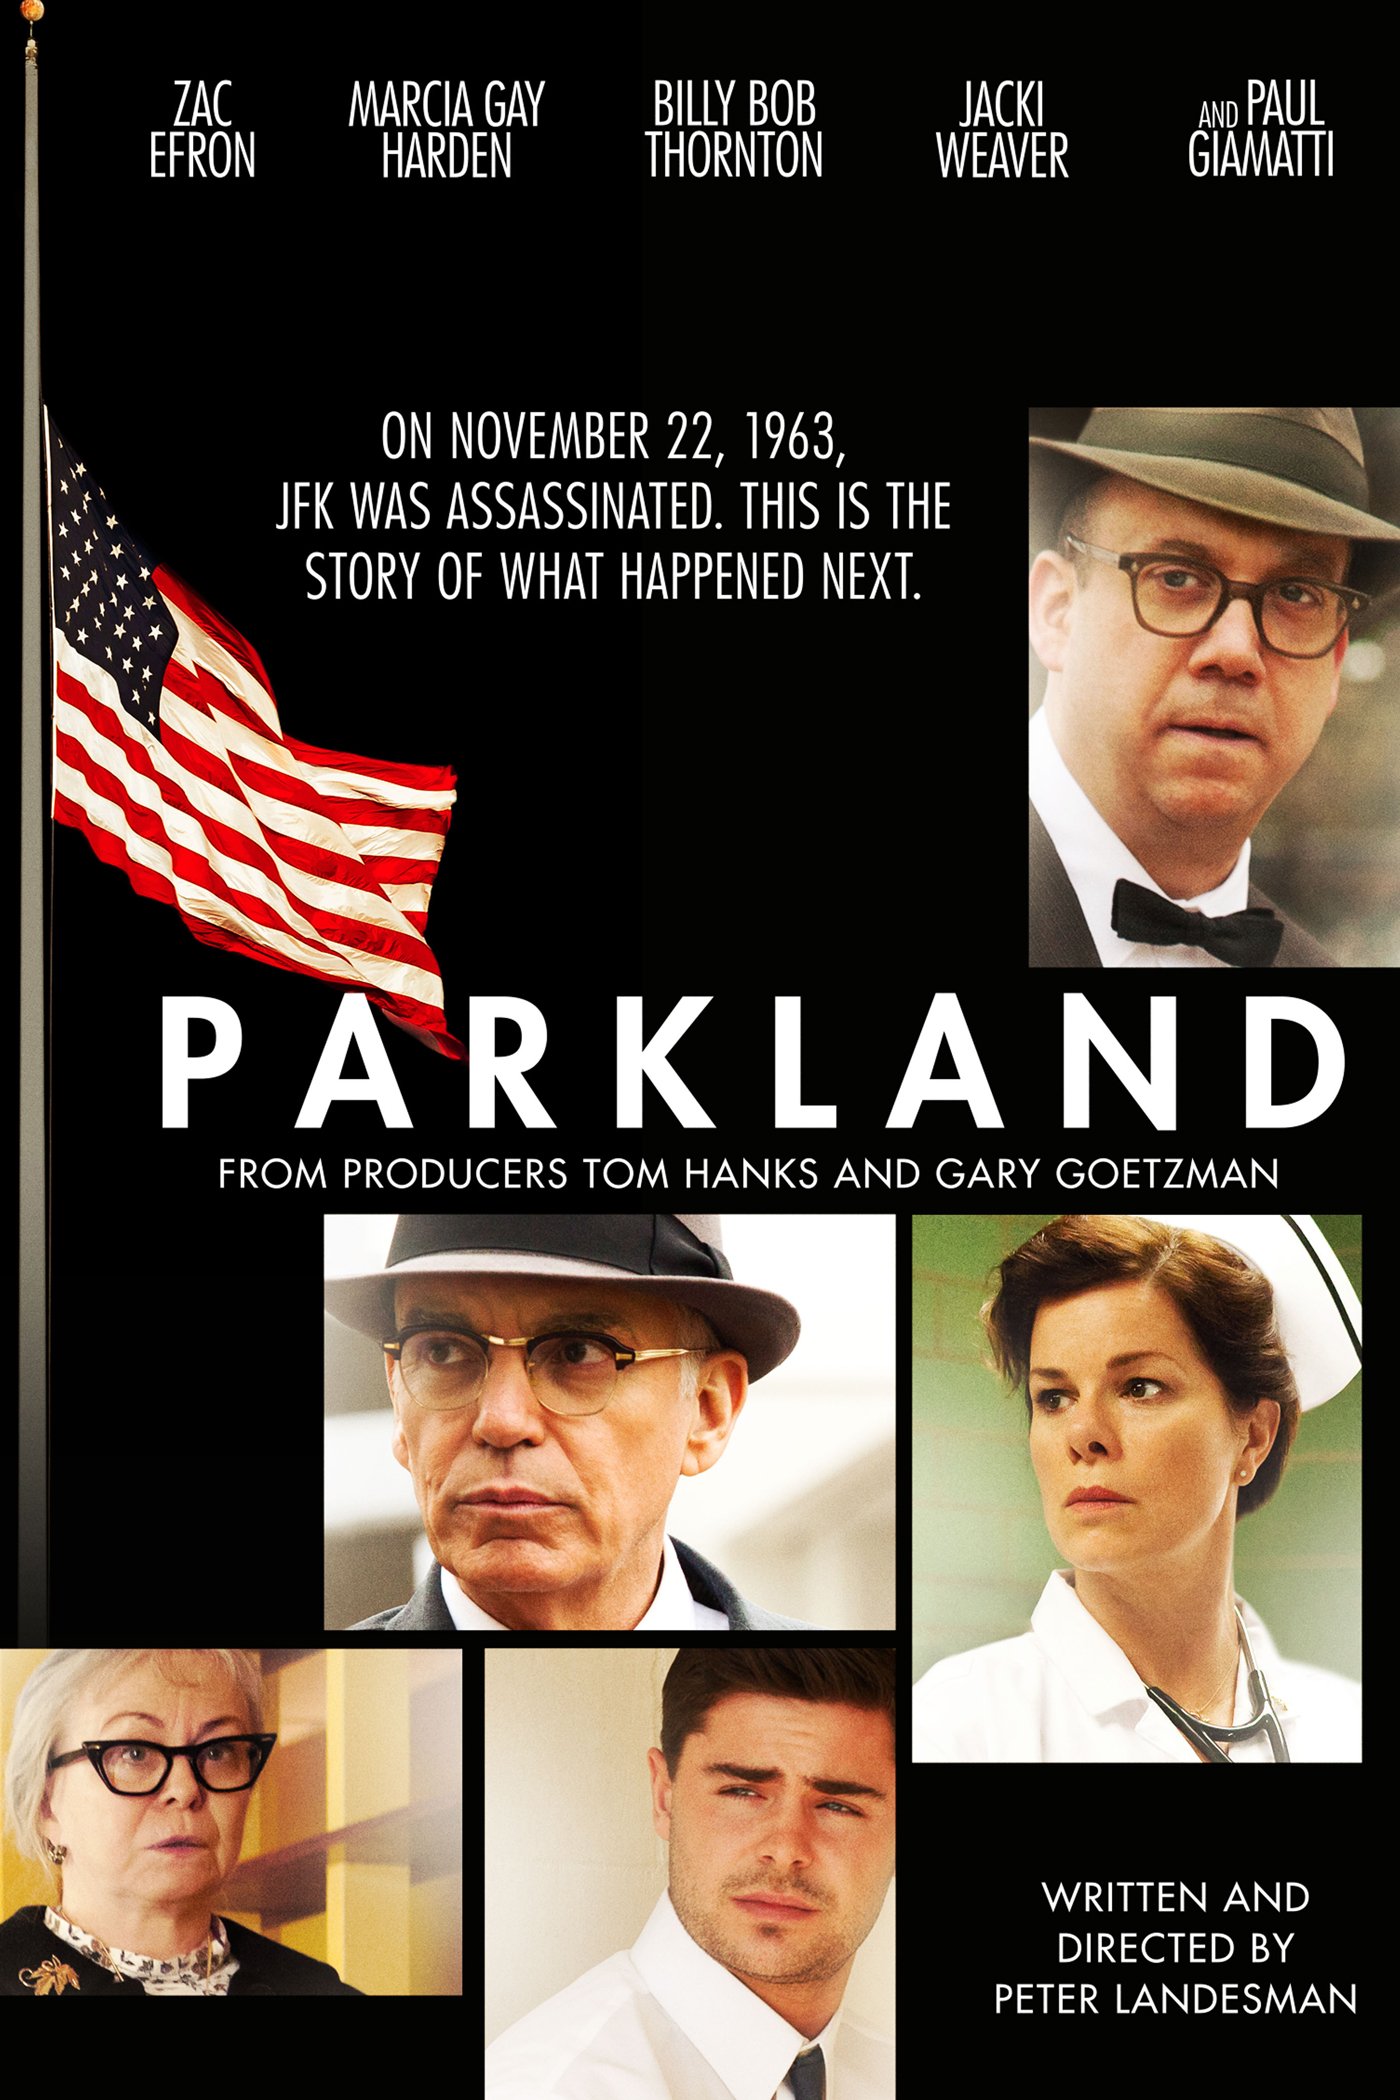 Парклэнд (2013) смотреть онлайн или скачать фильм через торрент бесплатно в хорошем качестве. Трейлеры, правдивые оценки, рецензии, комментарии, похожие фильмы, саундтрек, новости и интересные факты на кино портале